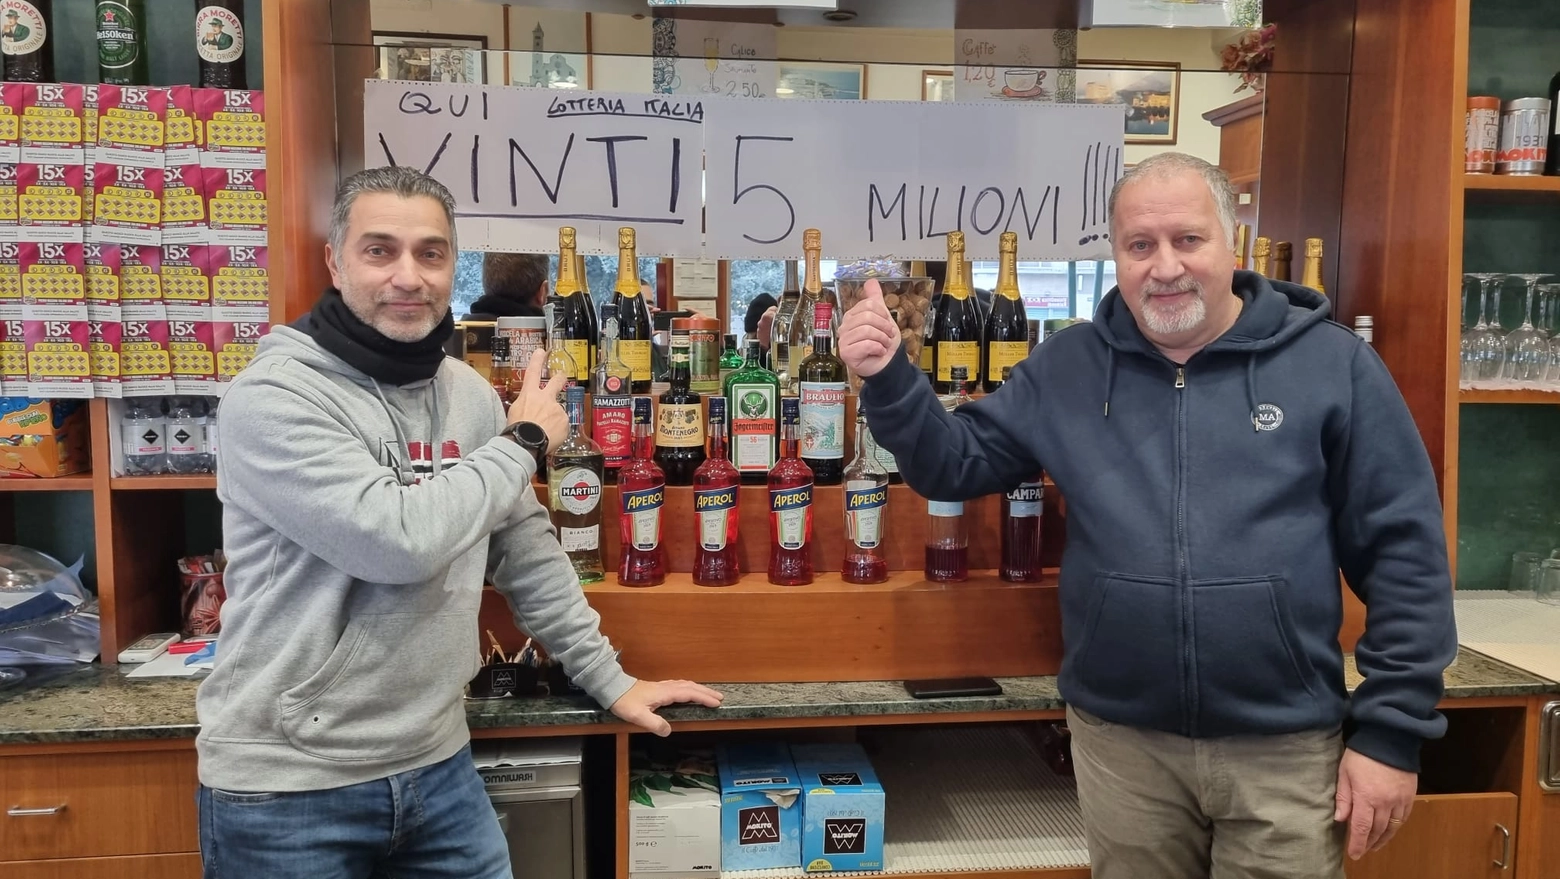 Milano, la tabaccheria dove è stato vinto il primo premio della Lotteria 2023-2024